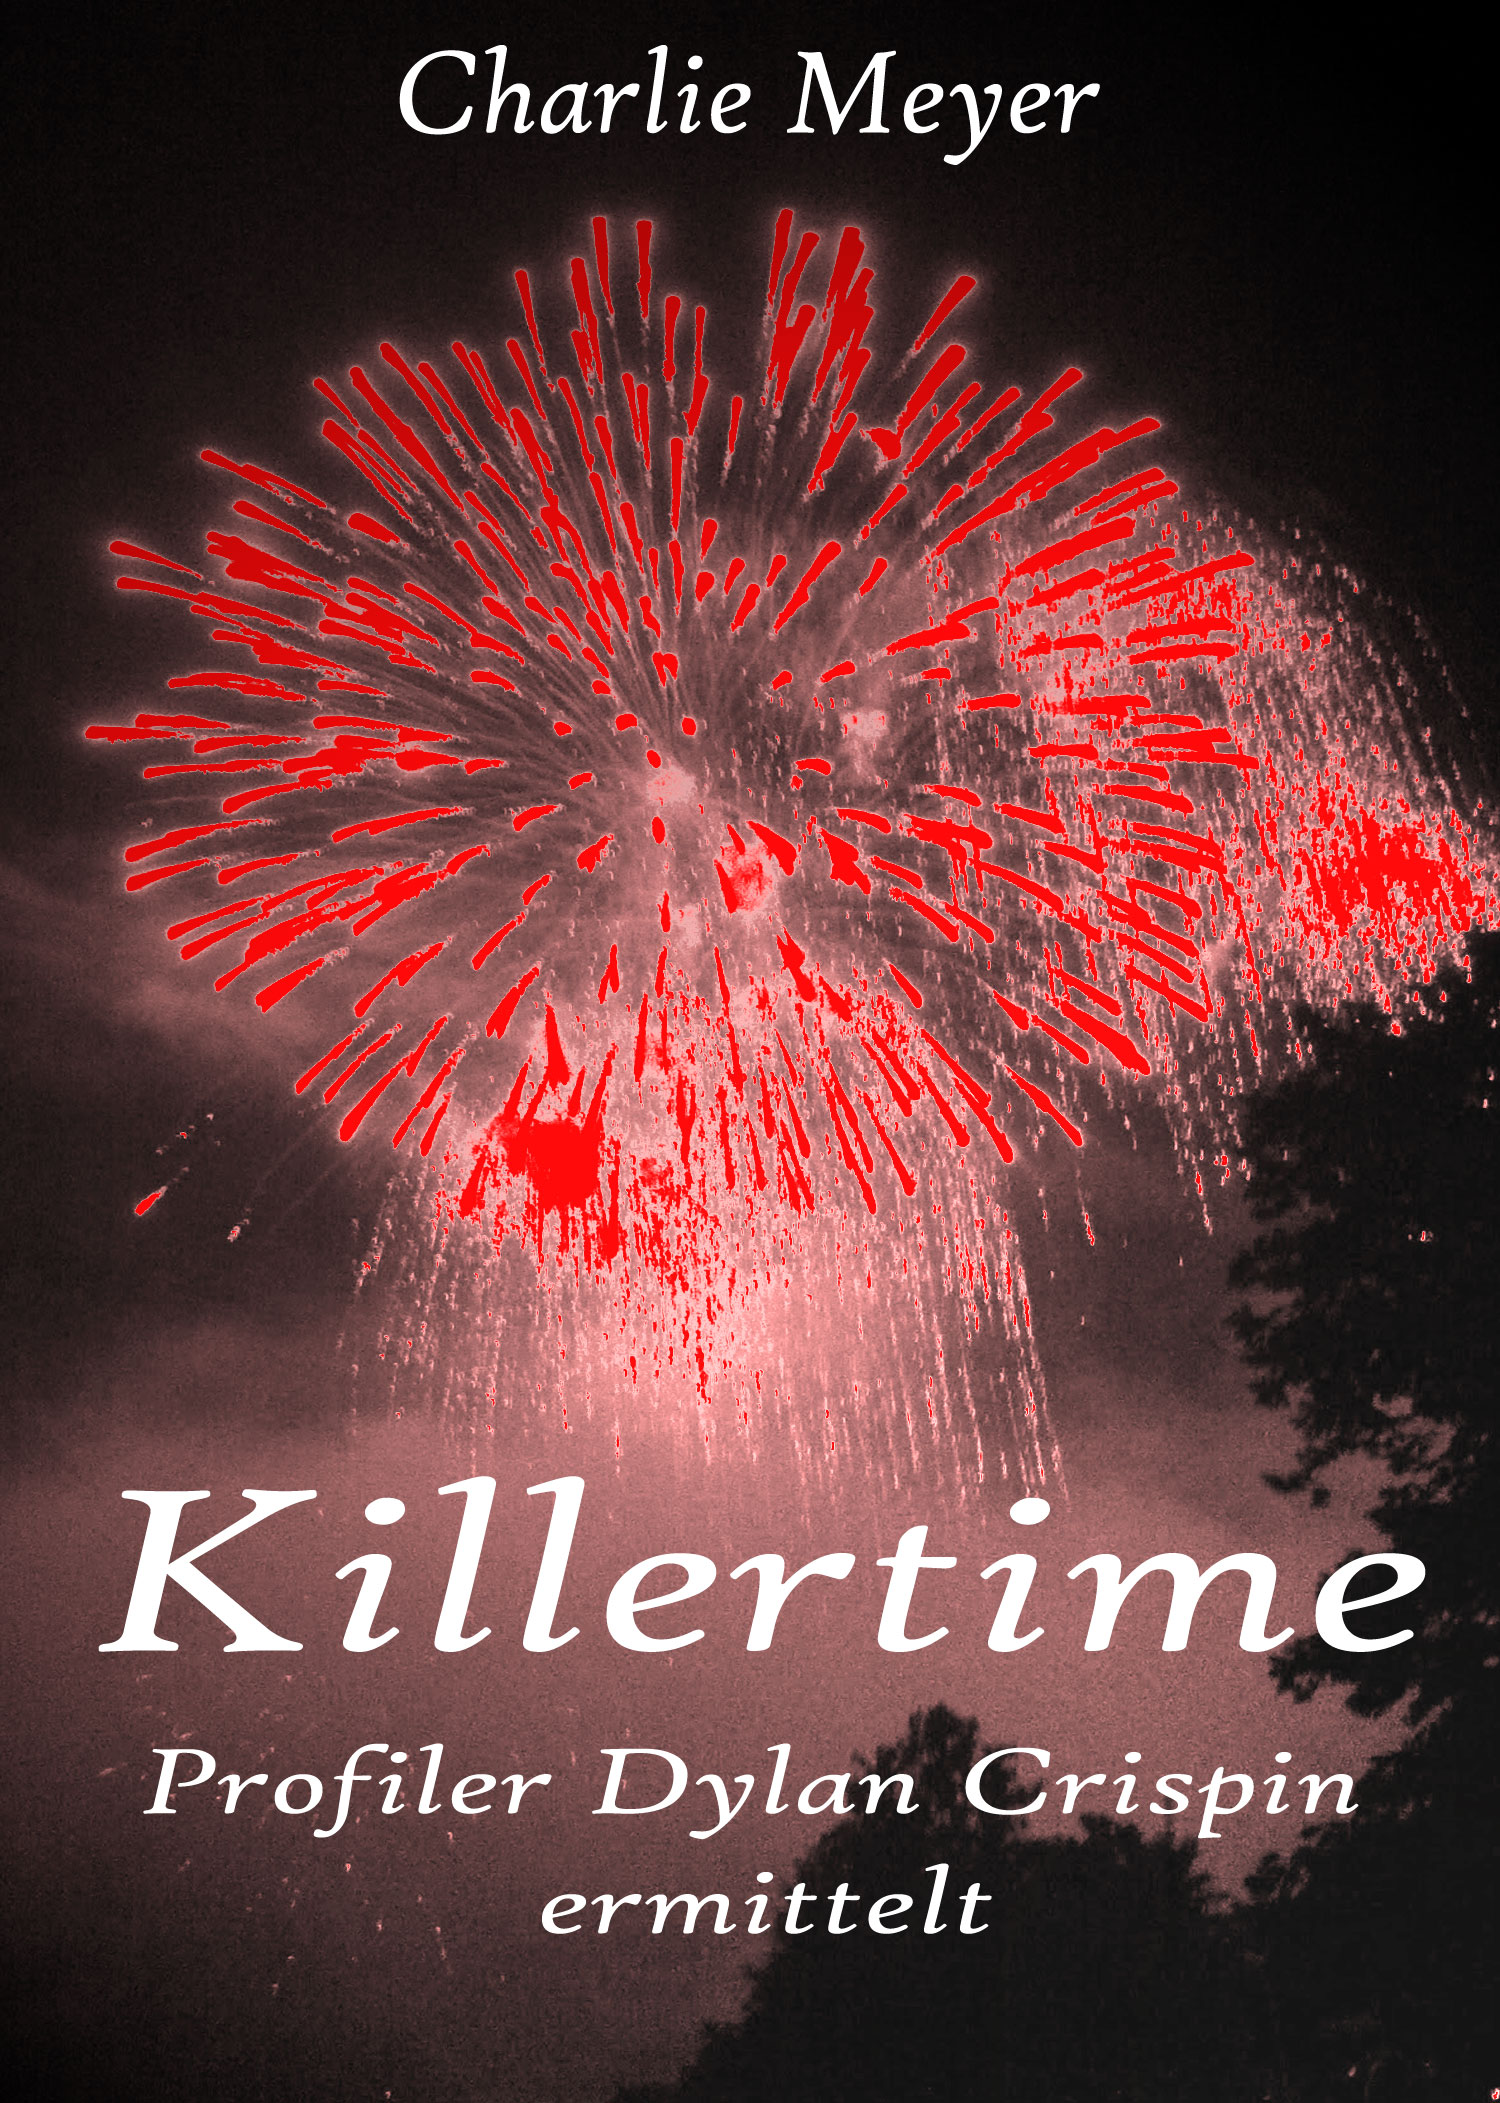 eBook Thriller "Killertime"